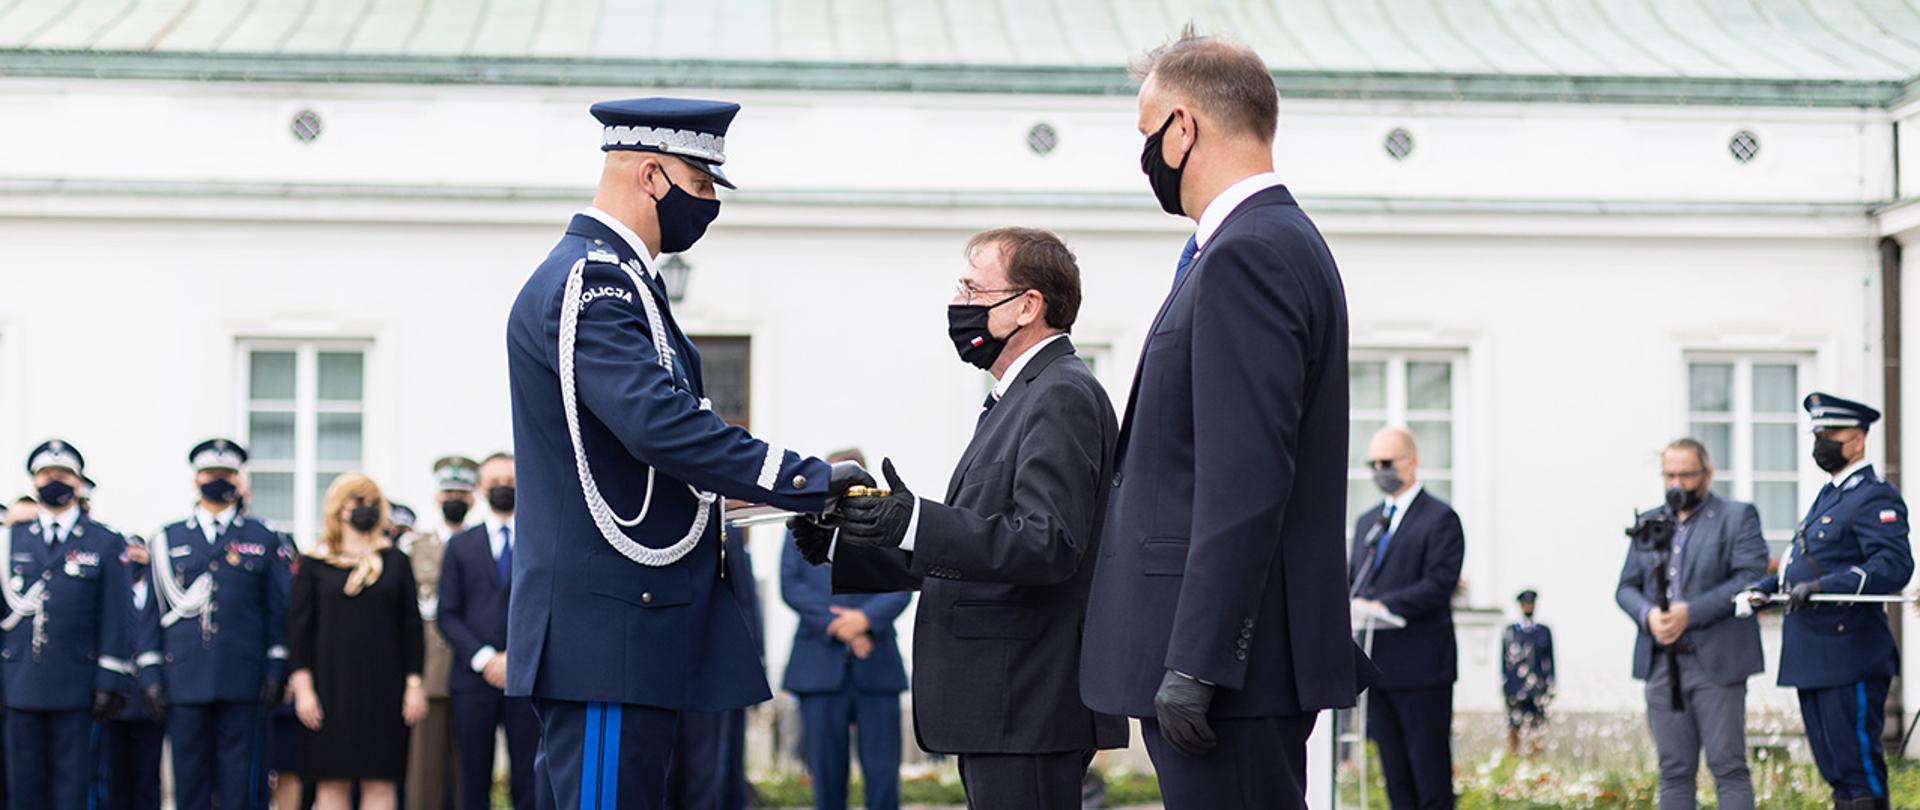 Na zdjęciu widać ministra Mariusza Kamińskiego wręczającego szablę generalską jednemu z nowo nominowanych generałów Policji.